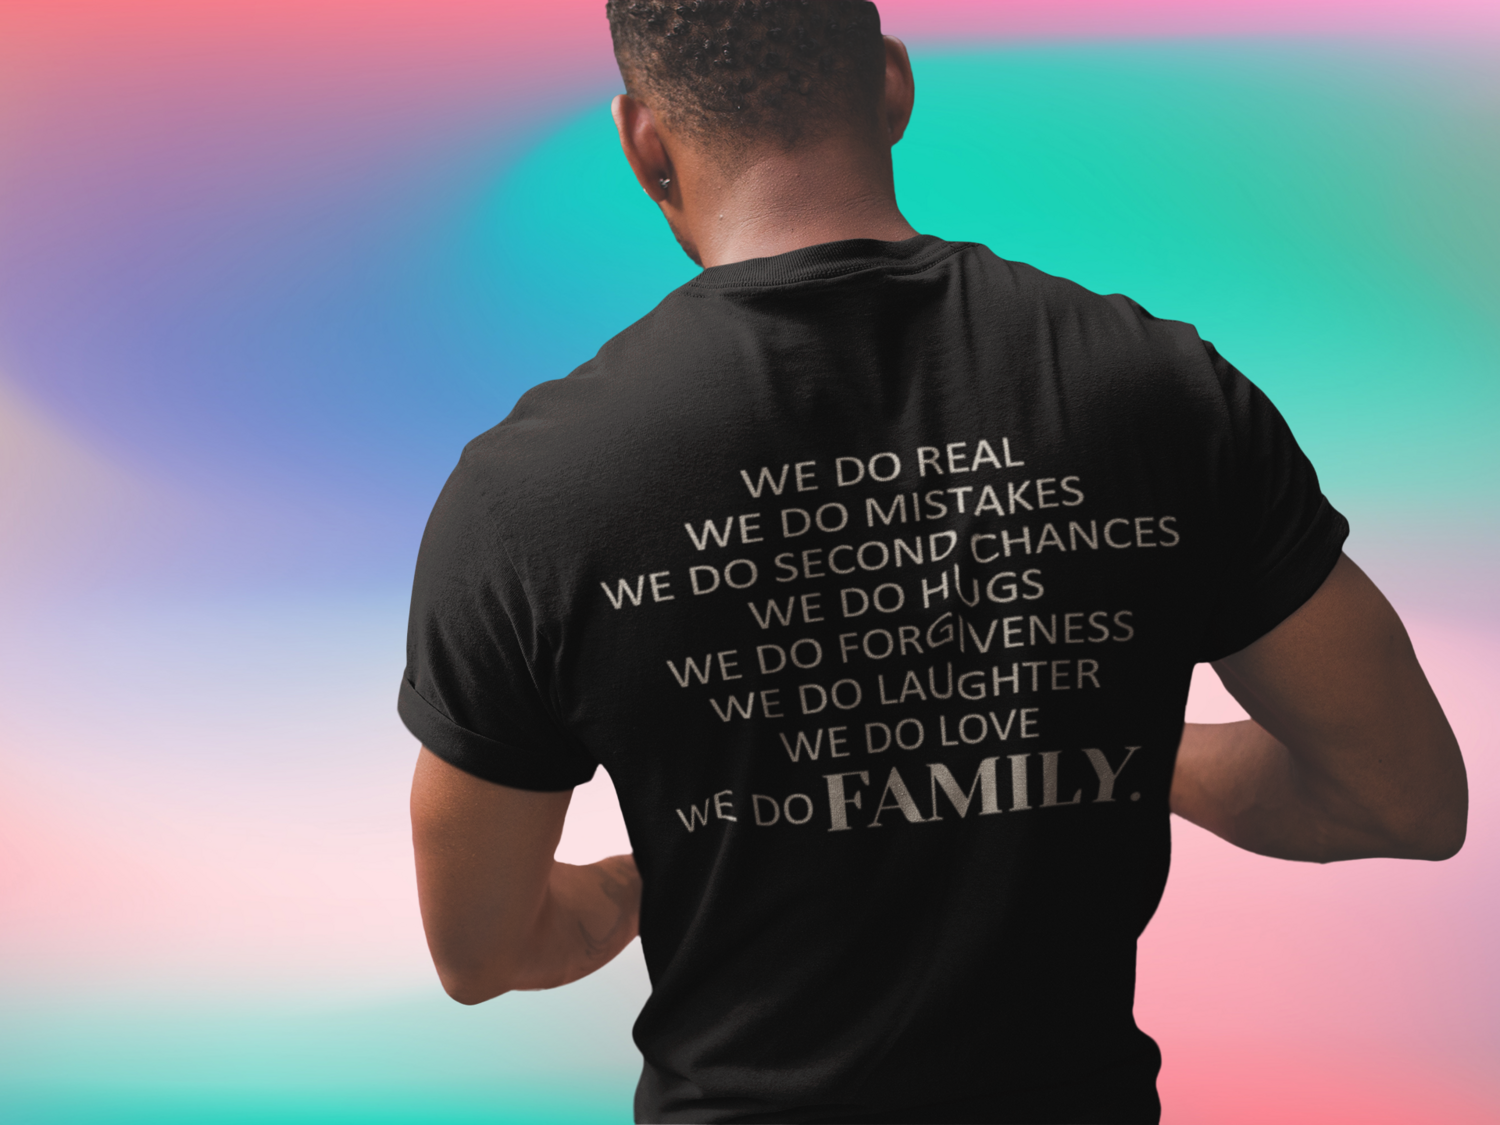 "We do FAMILY." Unisex Short-sleeved t-shirt